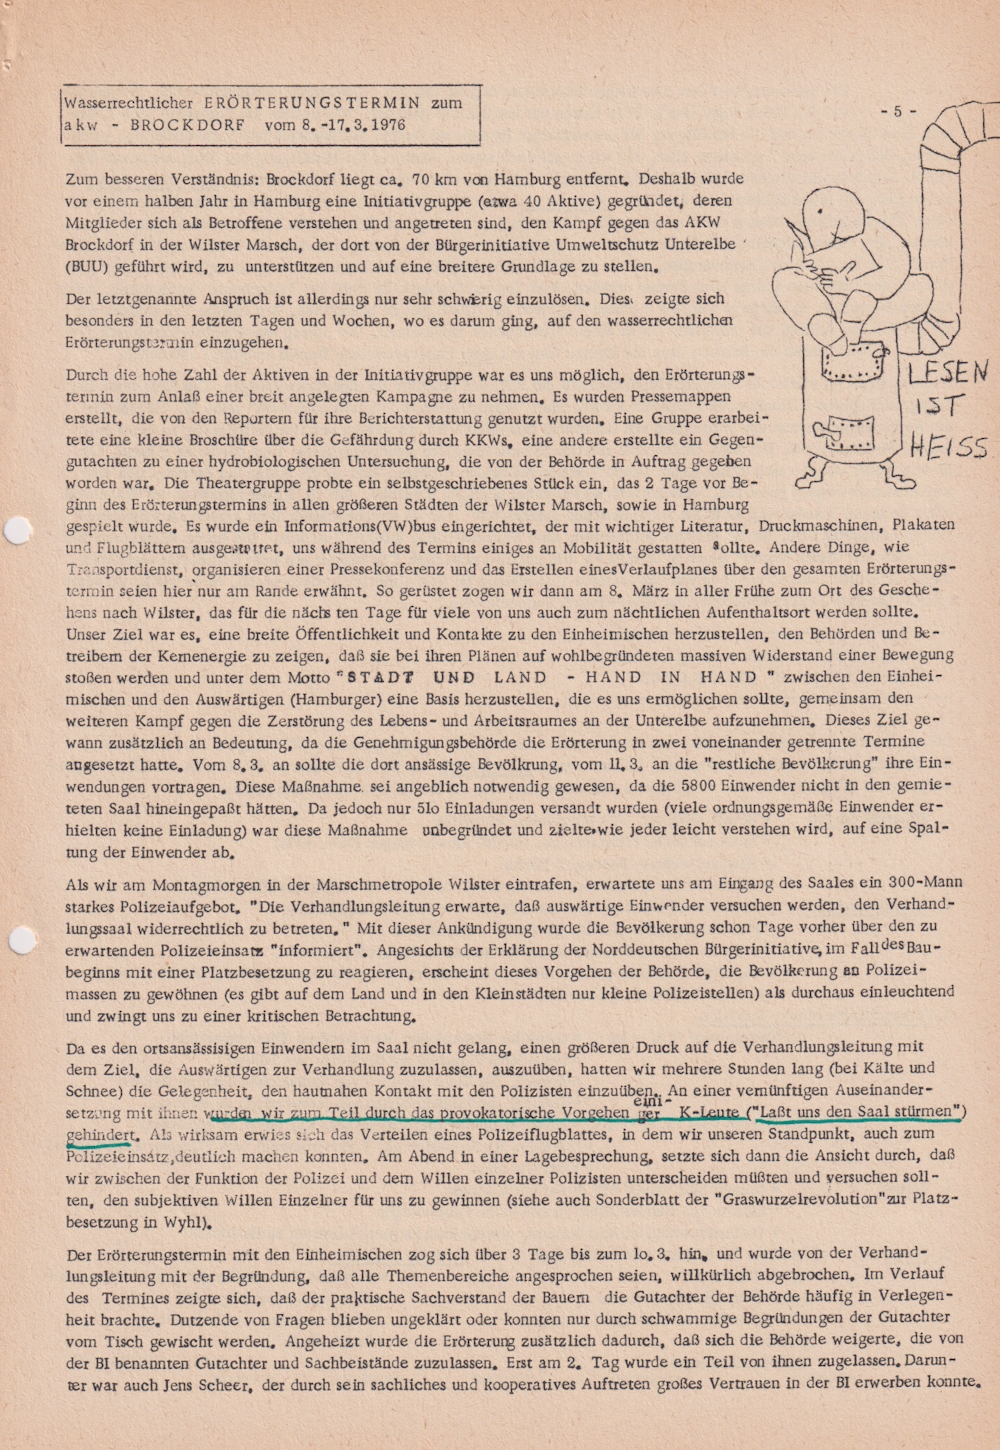 Informationsdienst für gewaltfreie Organisatoren, „Kein Atomkraftwerk in Uentrop" Teil 6, April 1976, Heft 27